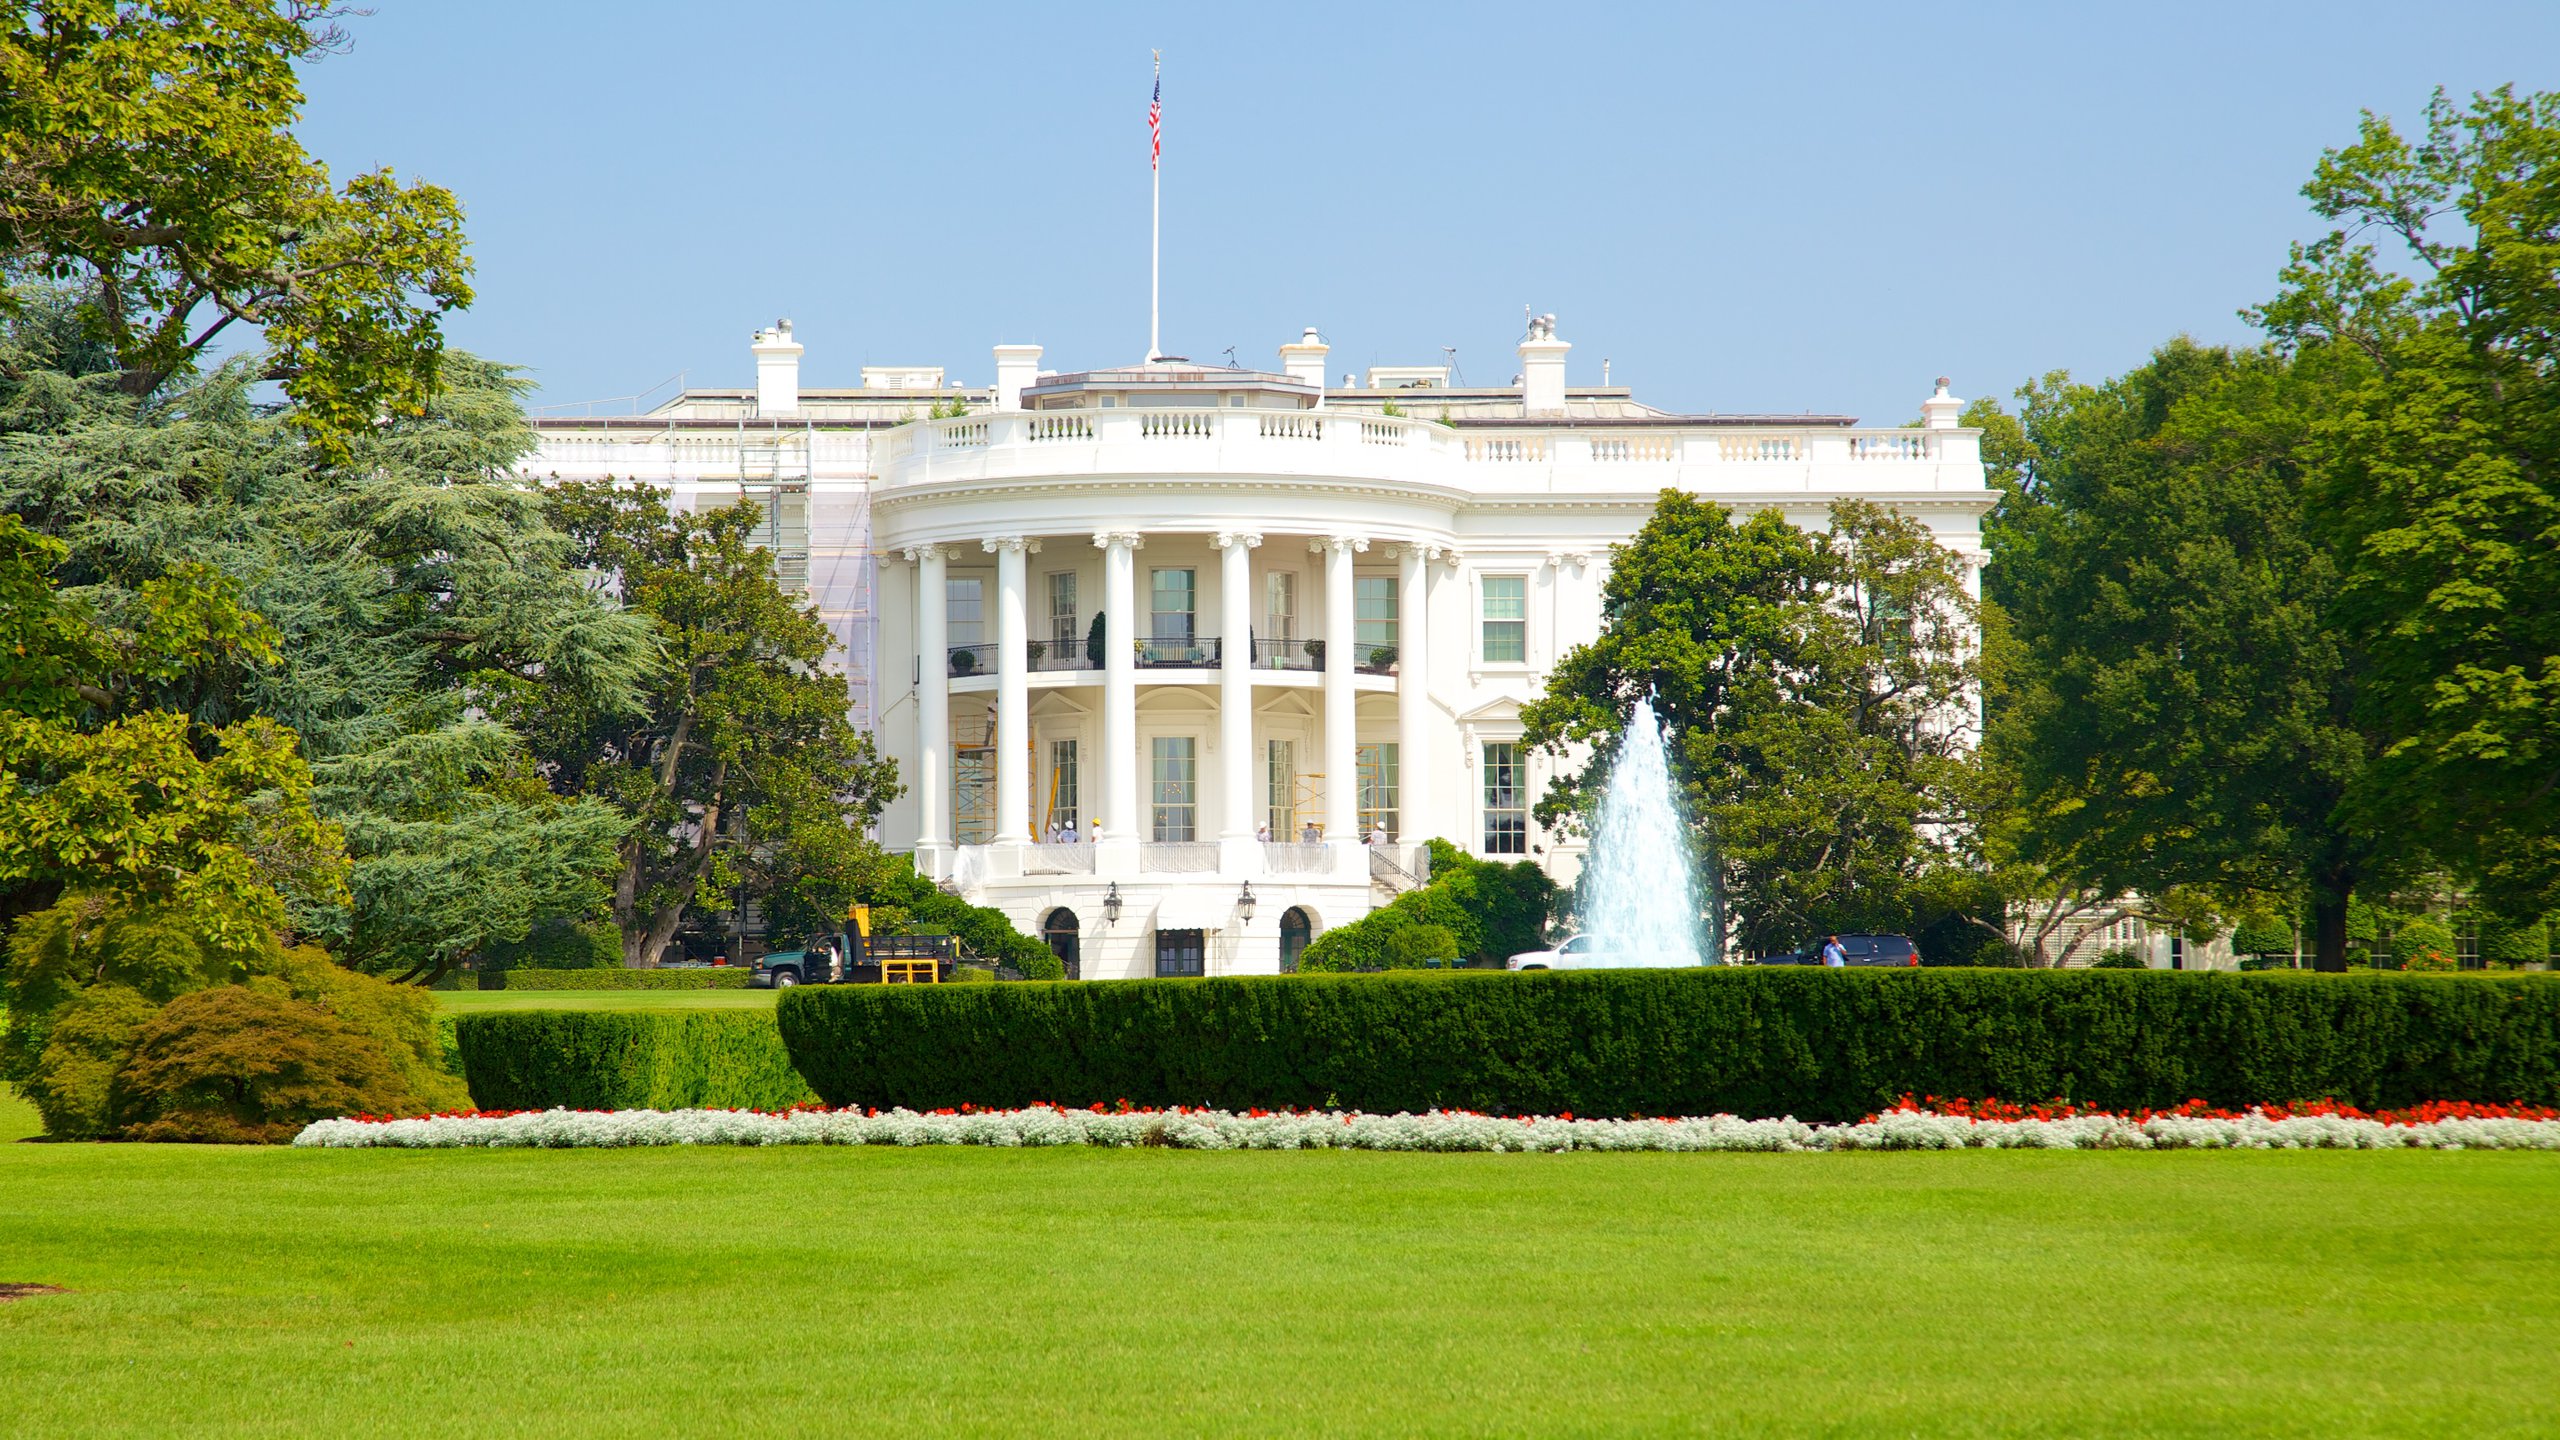 White House, Washington, District of Columbia, US